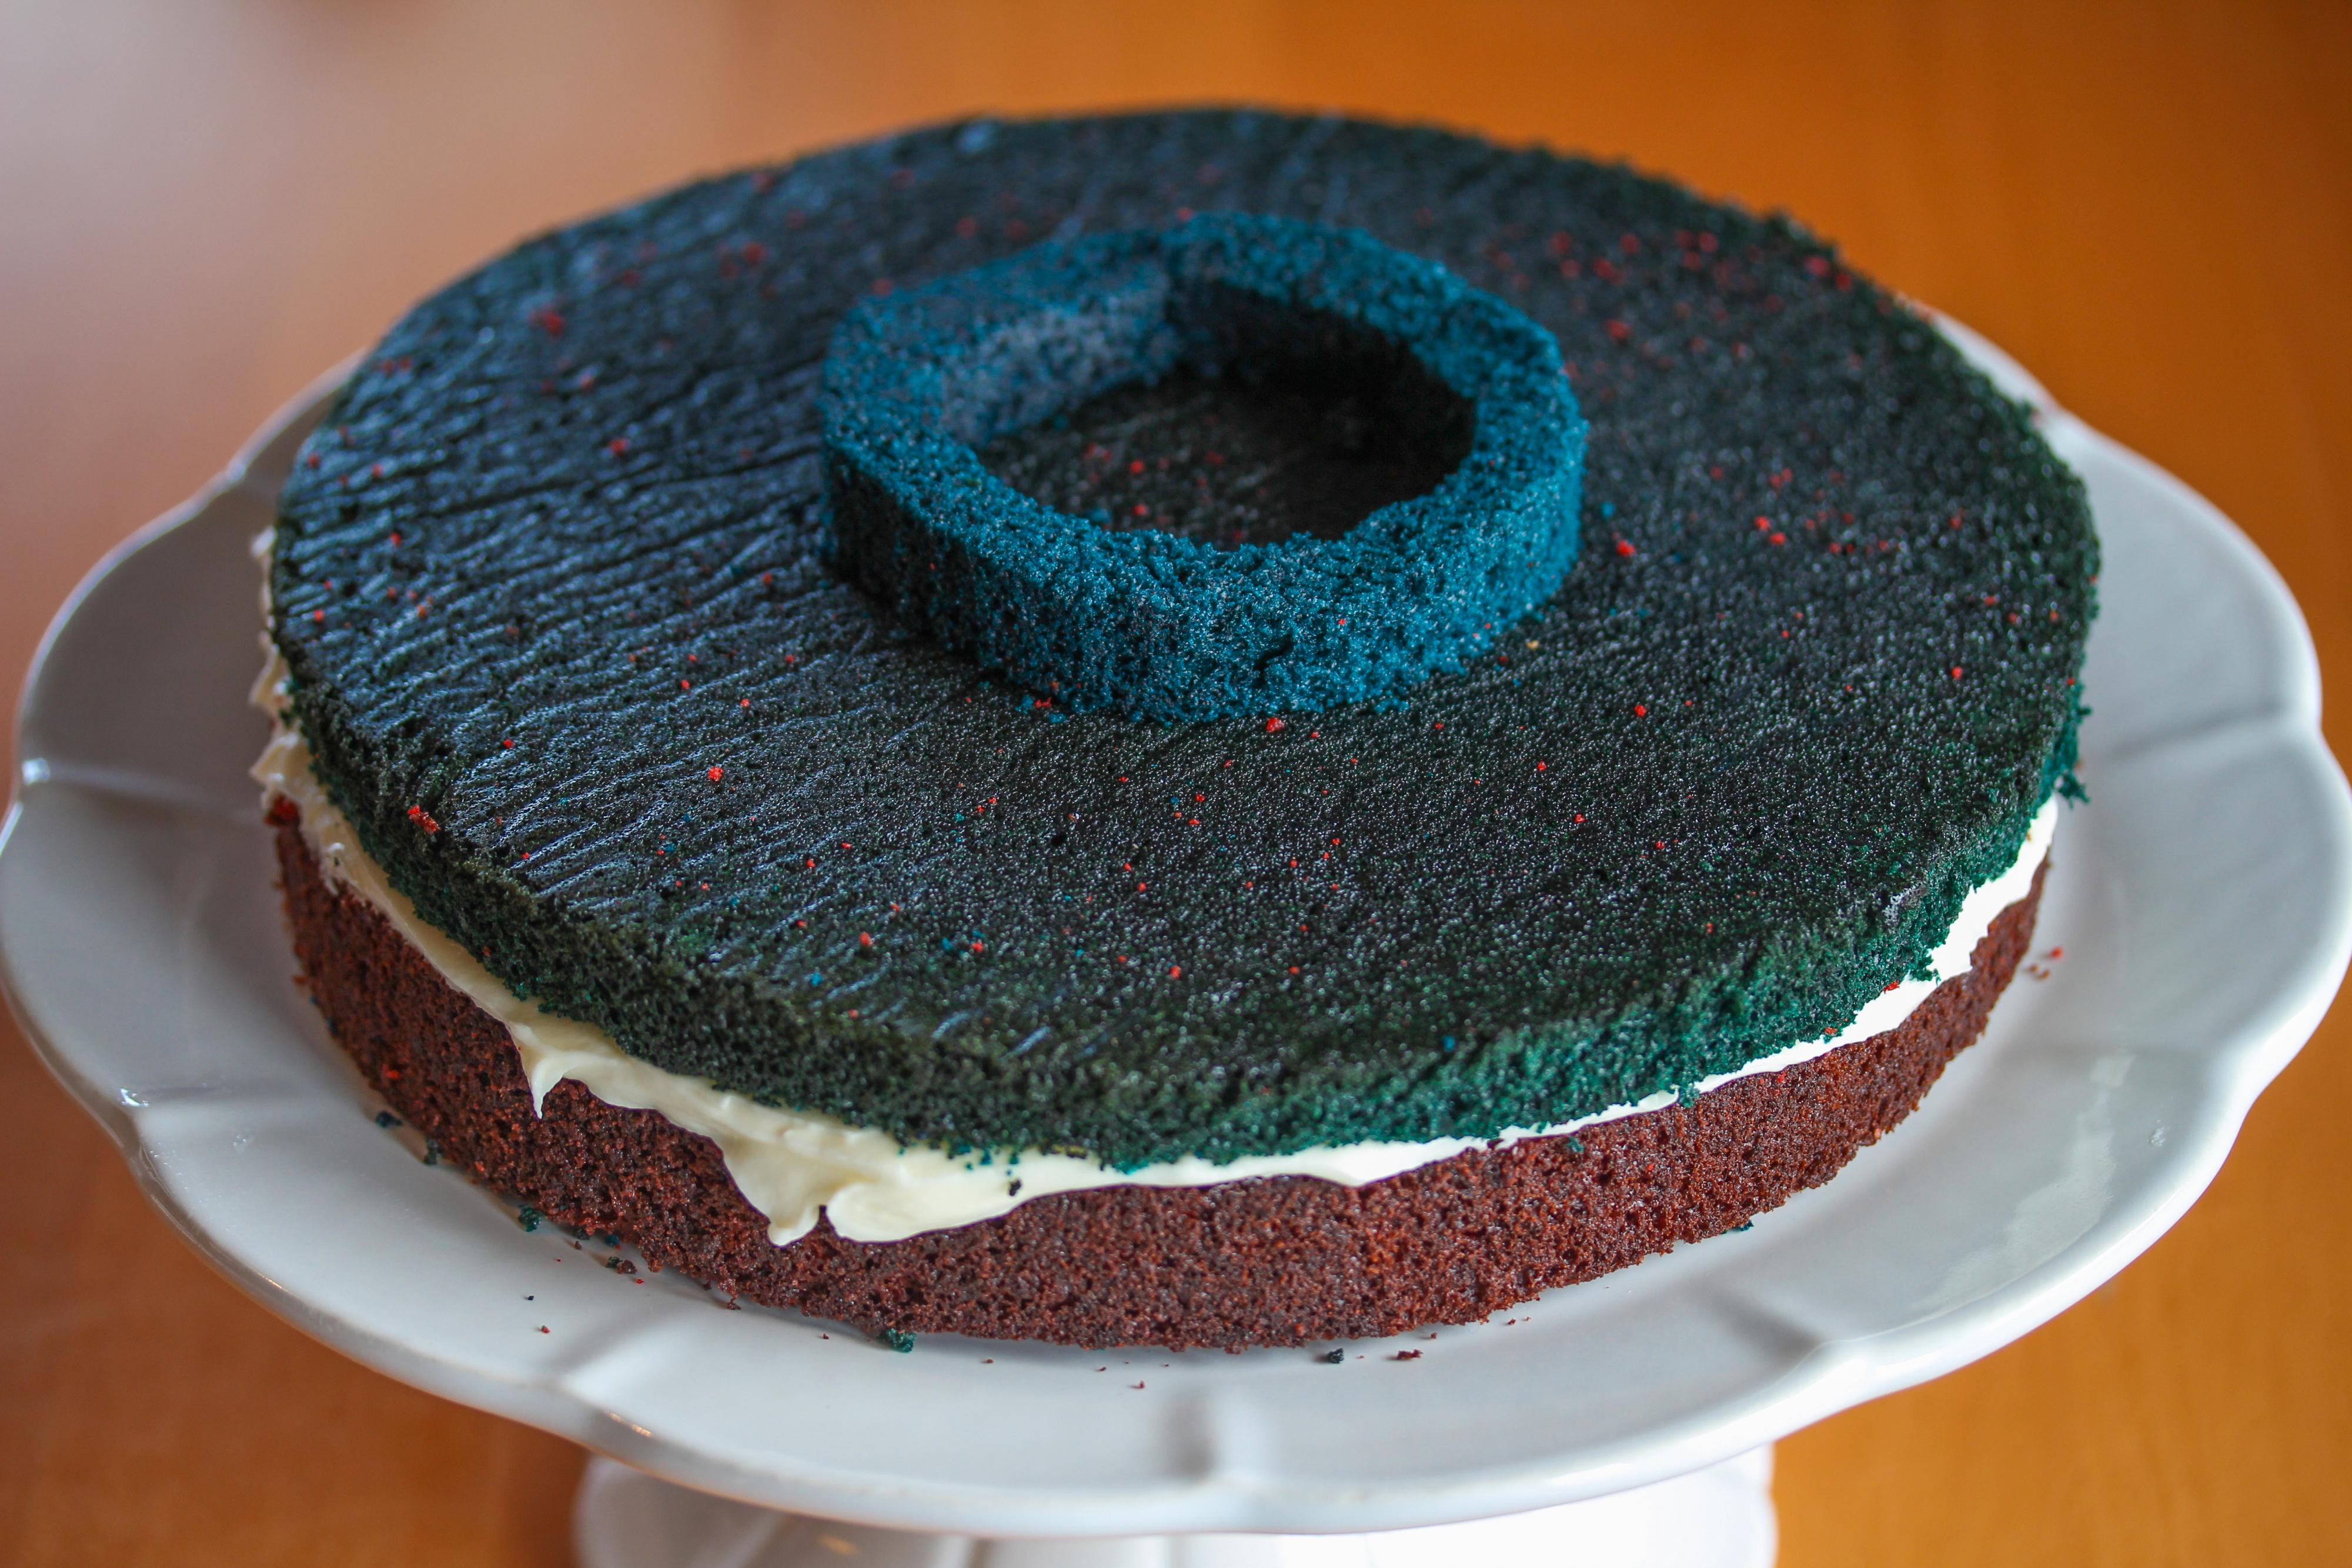 Legg den andre, blå kakesirkelen oppå den blå kakebunnen. Pass på at du treffer midten av kaken.